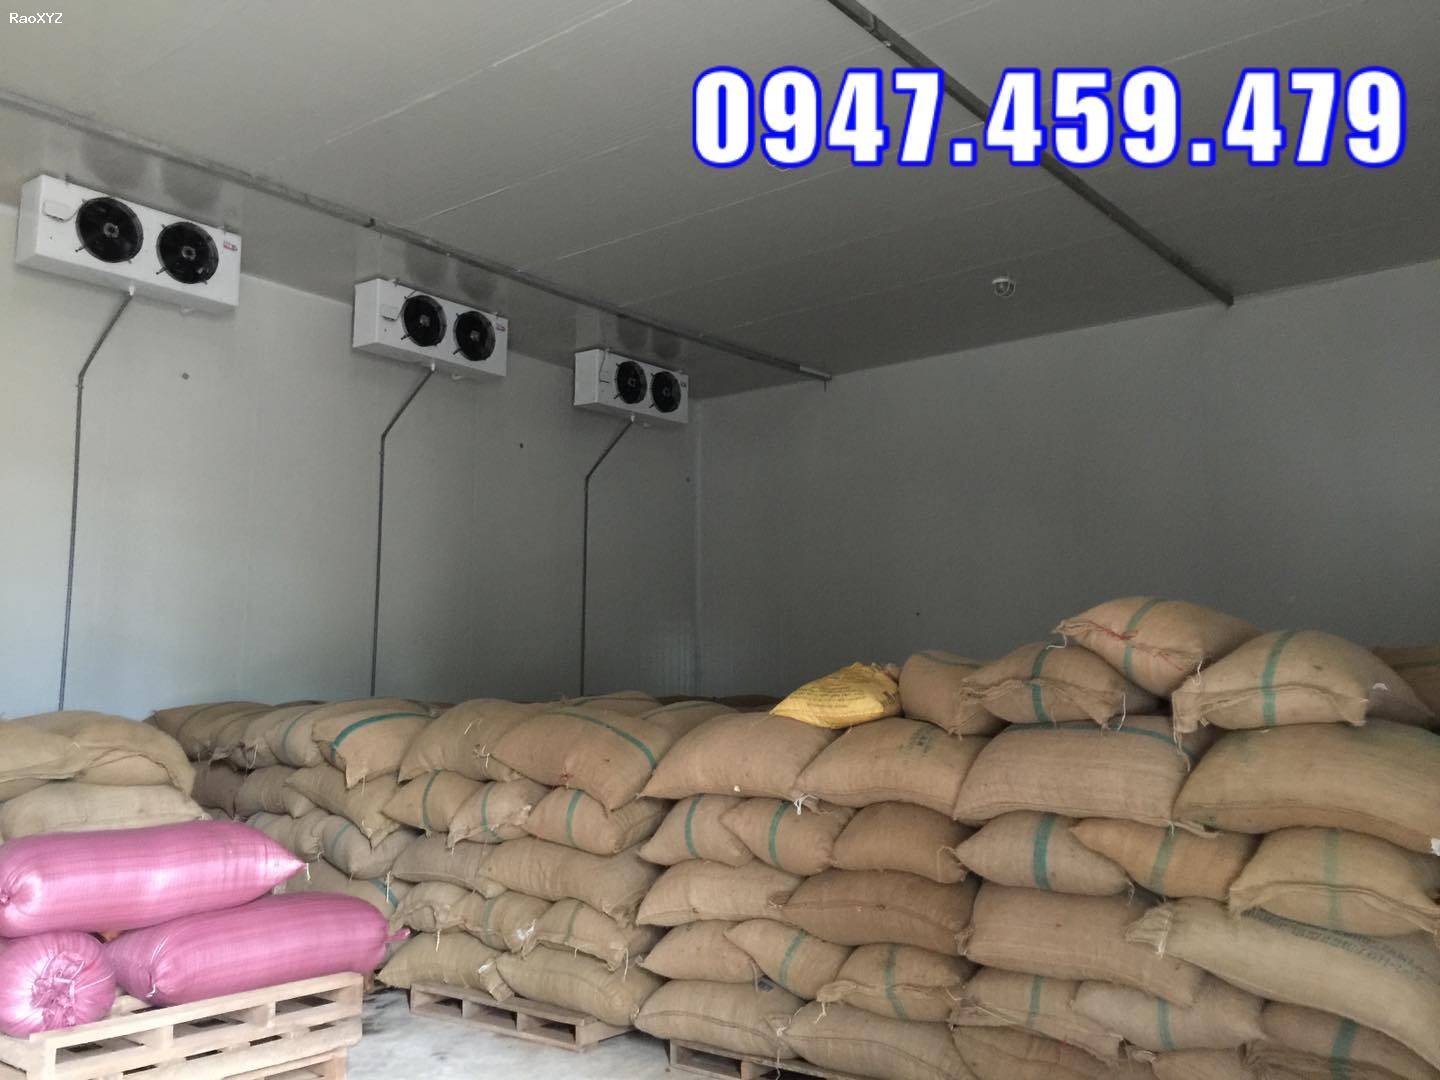 0947 459 479 lắp đặt kho lạnh trữ hạt giống nông sản Bình Thuận, Thiết kế kho lạnh trữ thủy sản